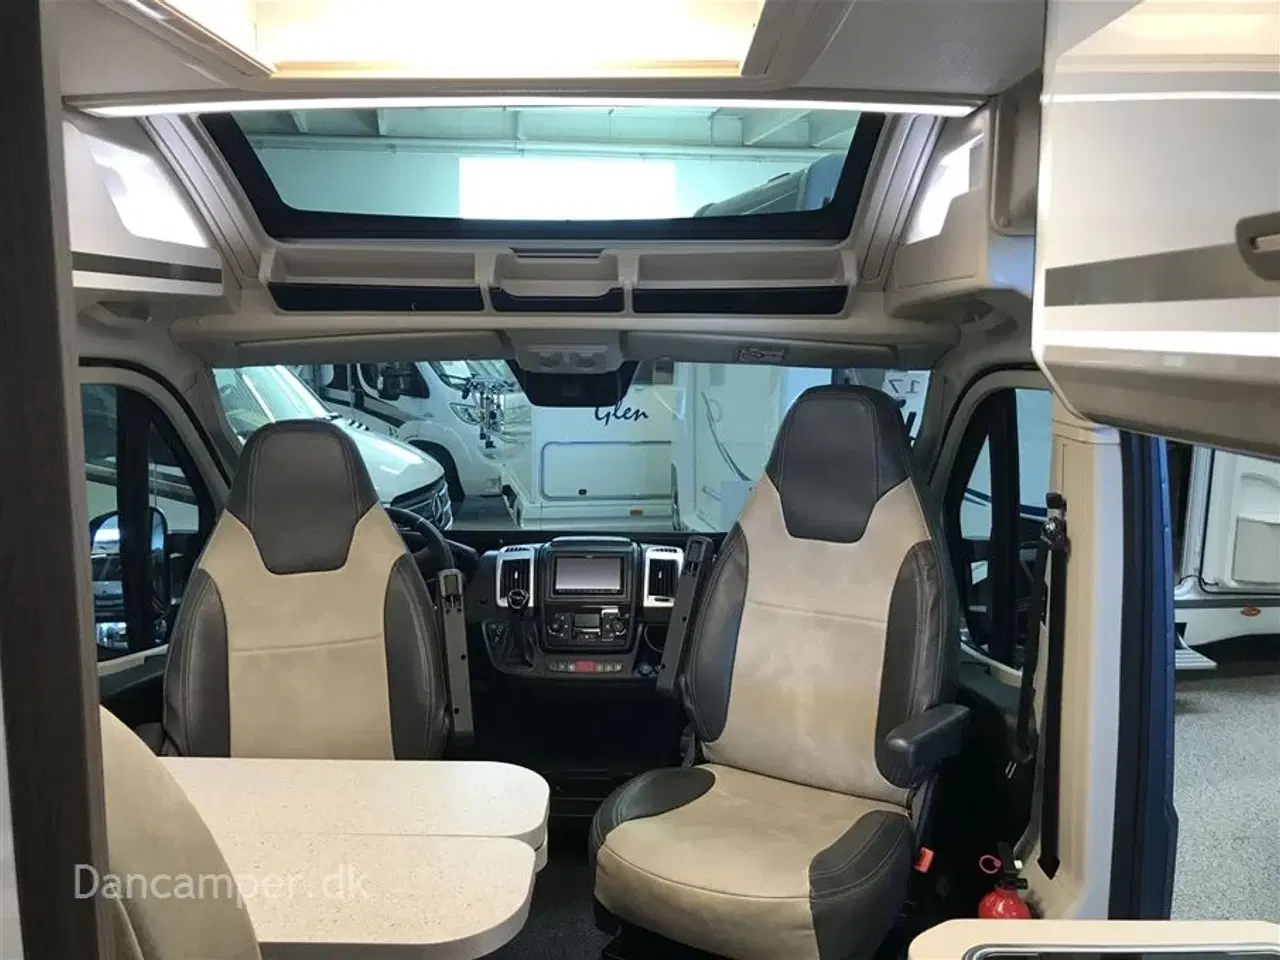 Billede 33 - 2020 - Chausson Twist V697   Anvisningsbil. 2,3 L  160 HK camper-van med solcelle og masser af udstyr